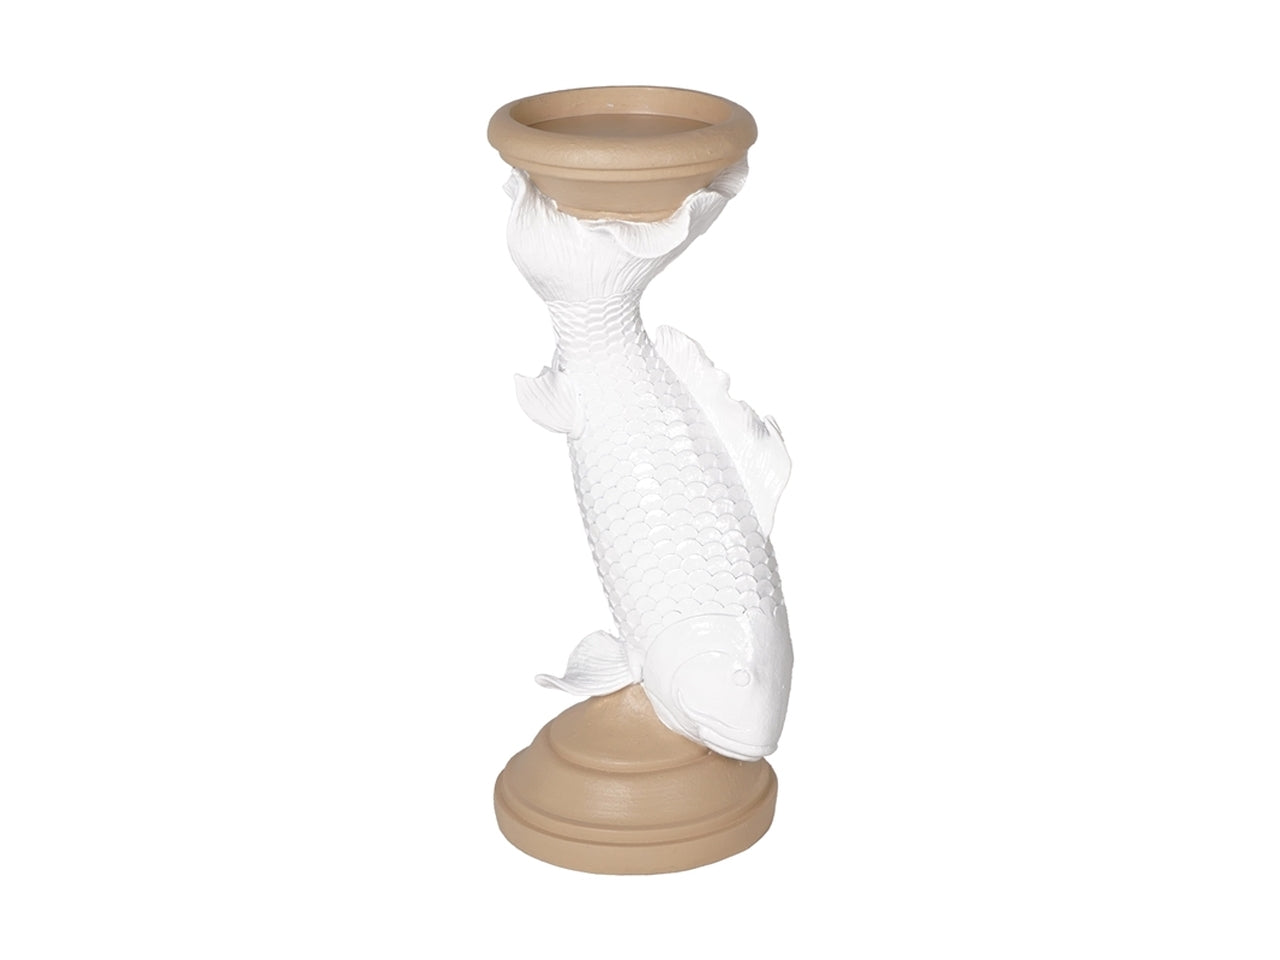 Porta candele orientale in resina color crema e bianco con fusto a forma di carpa - altezza 30 cm, diametro 11 cm - Plàthea